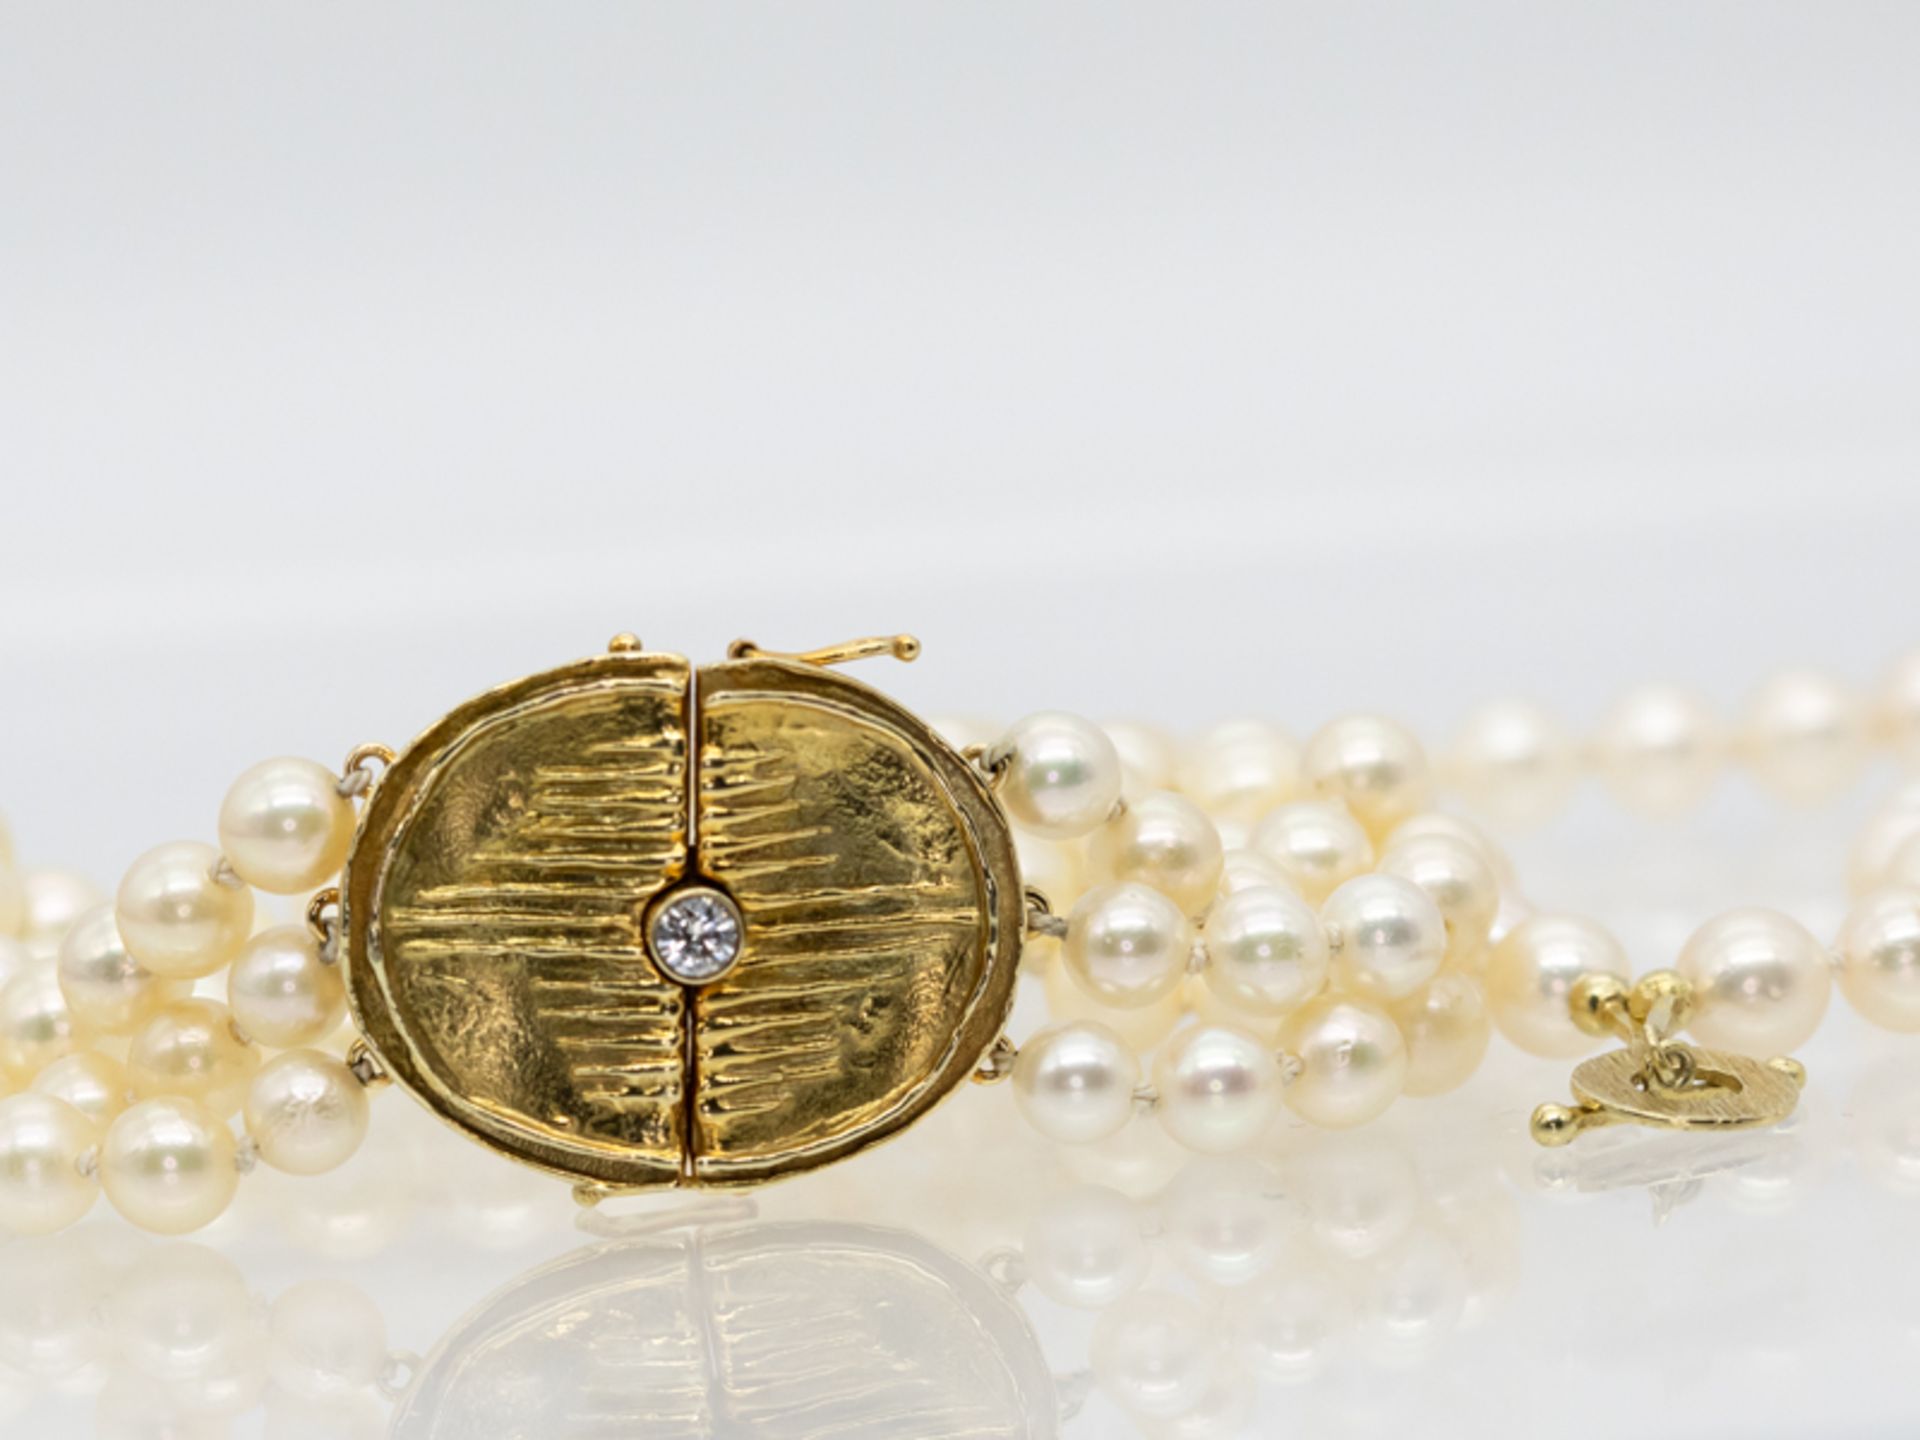 Perlen-Collier- und 3-rhg. Armband, goldene Schlösser in abstrakter Form mit 1 Brillant ca. 0,1 ct, - Image 3 of 4